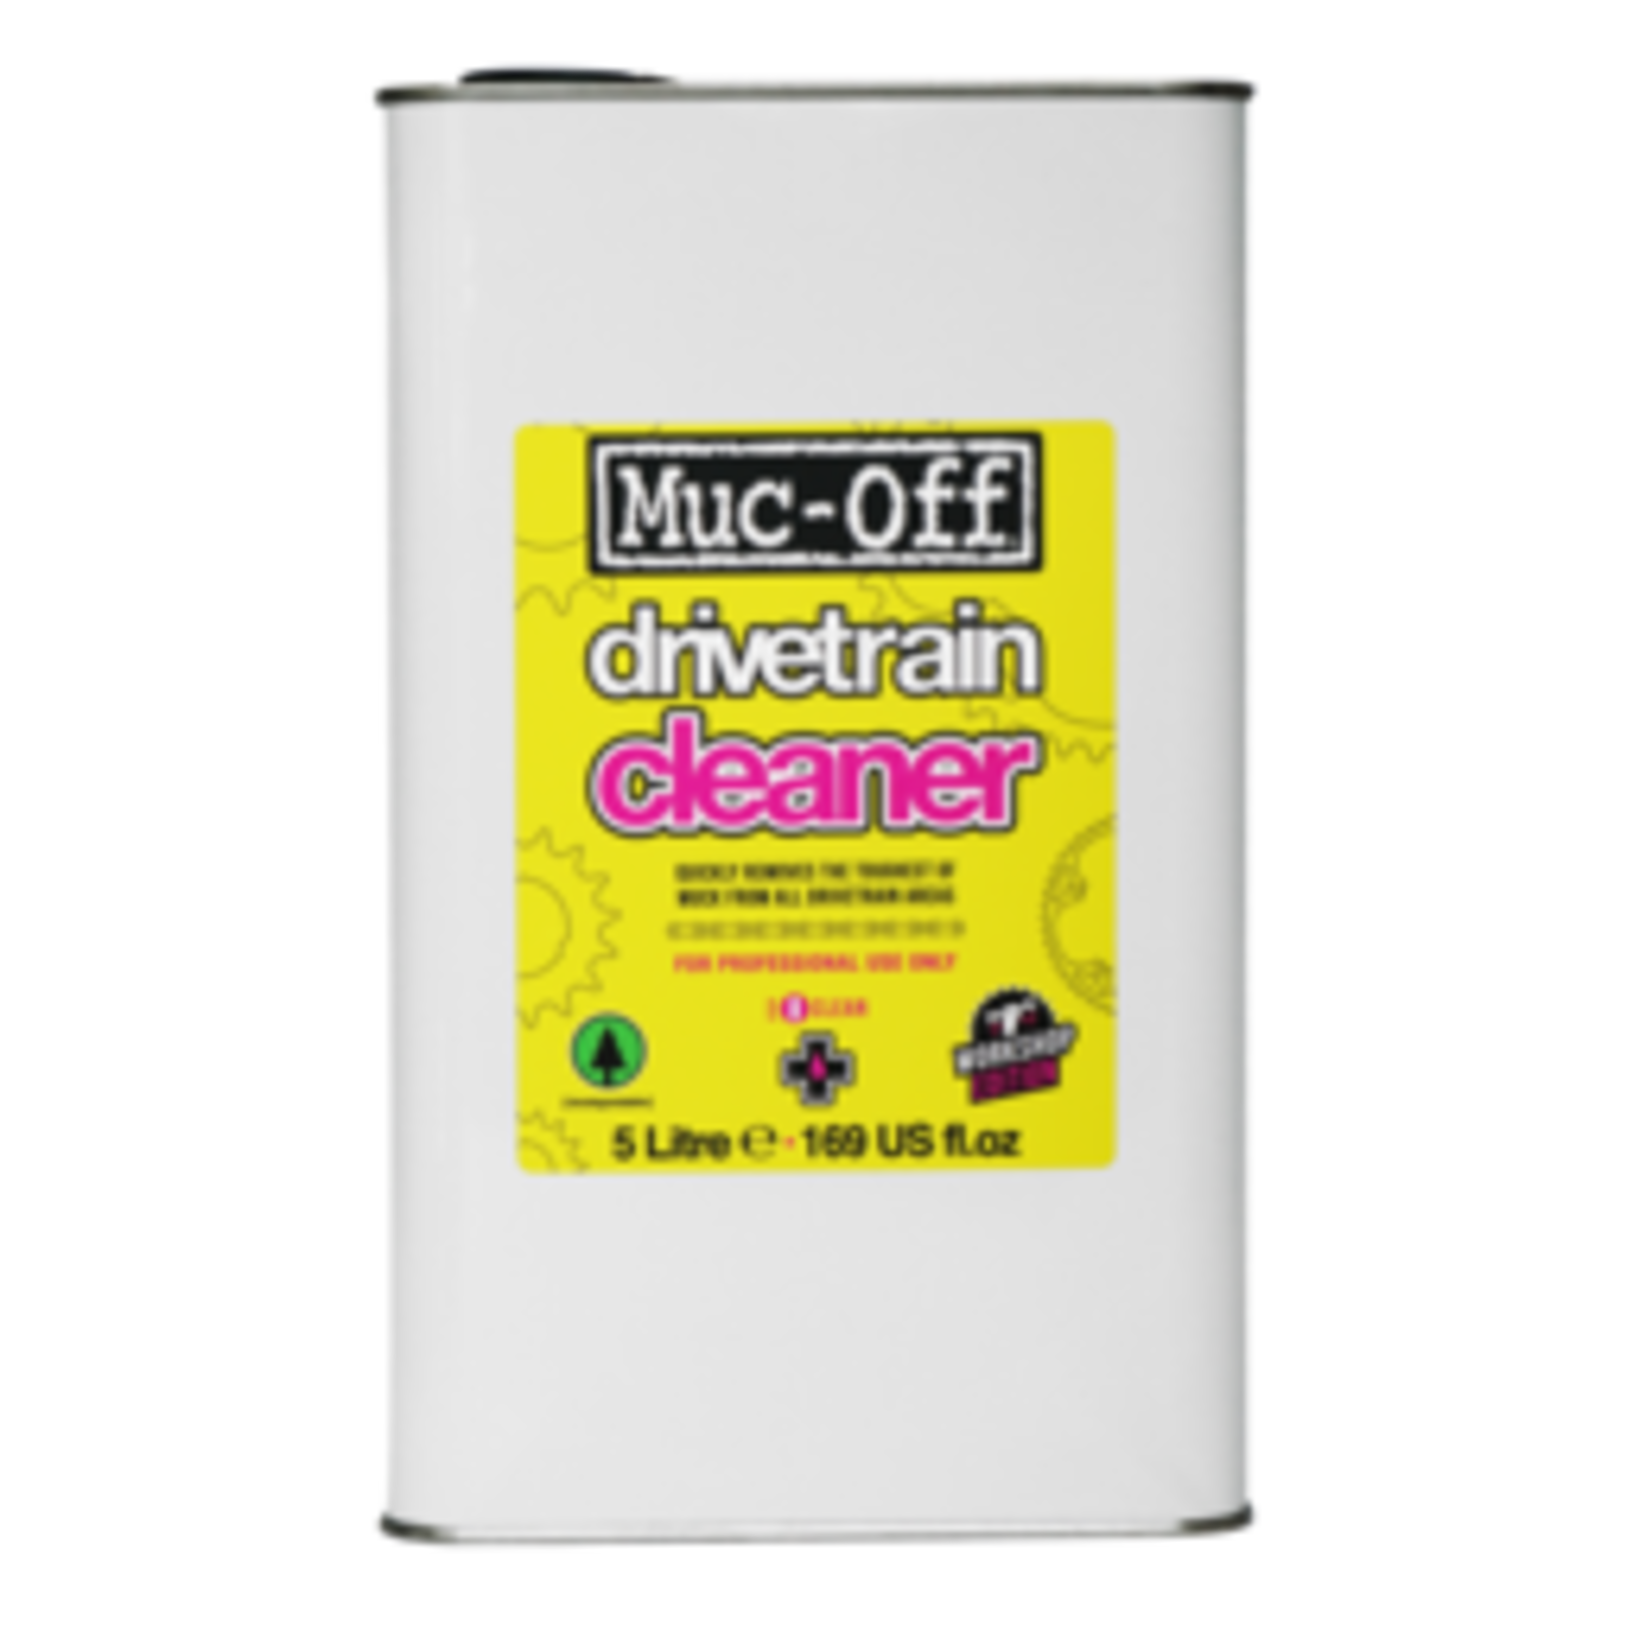 Muc-Off MCF Drivetrain cleaner 5L #807